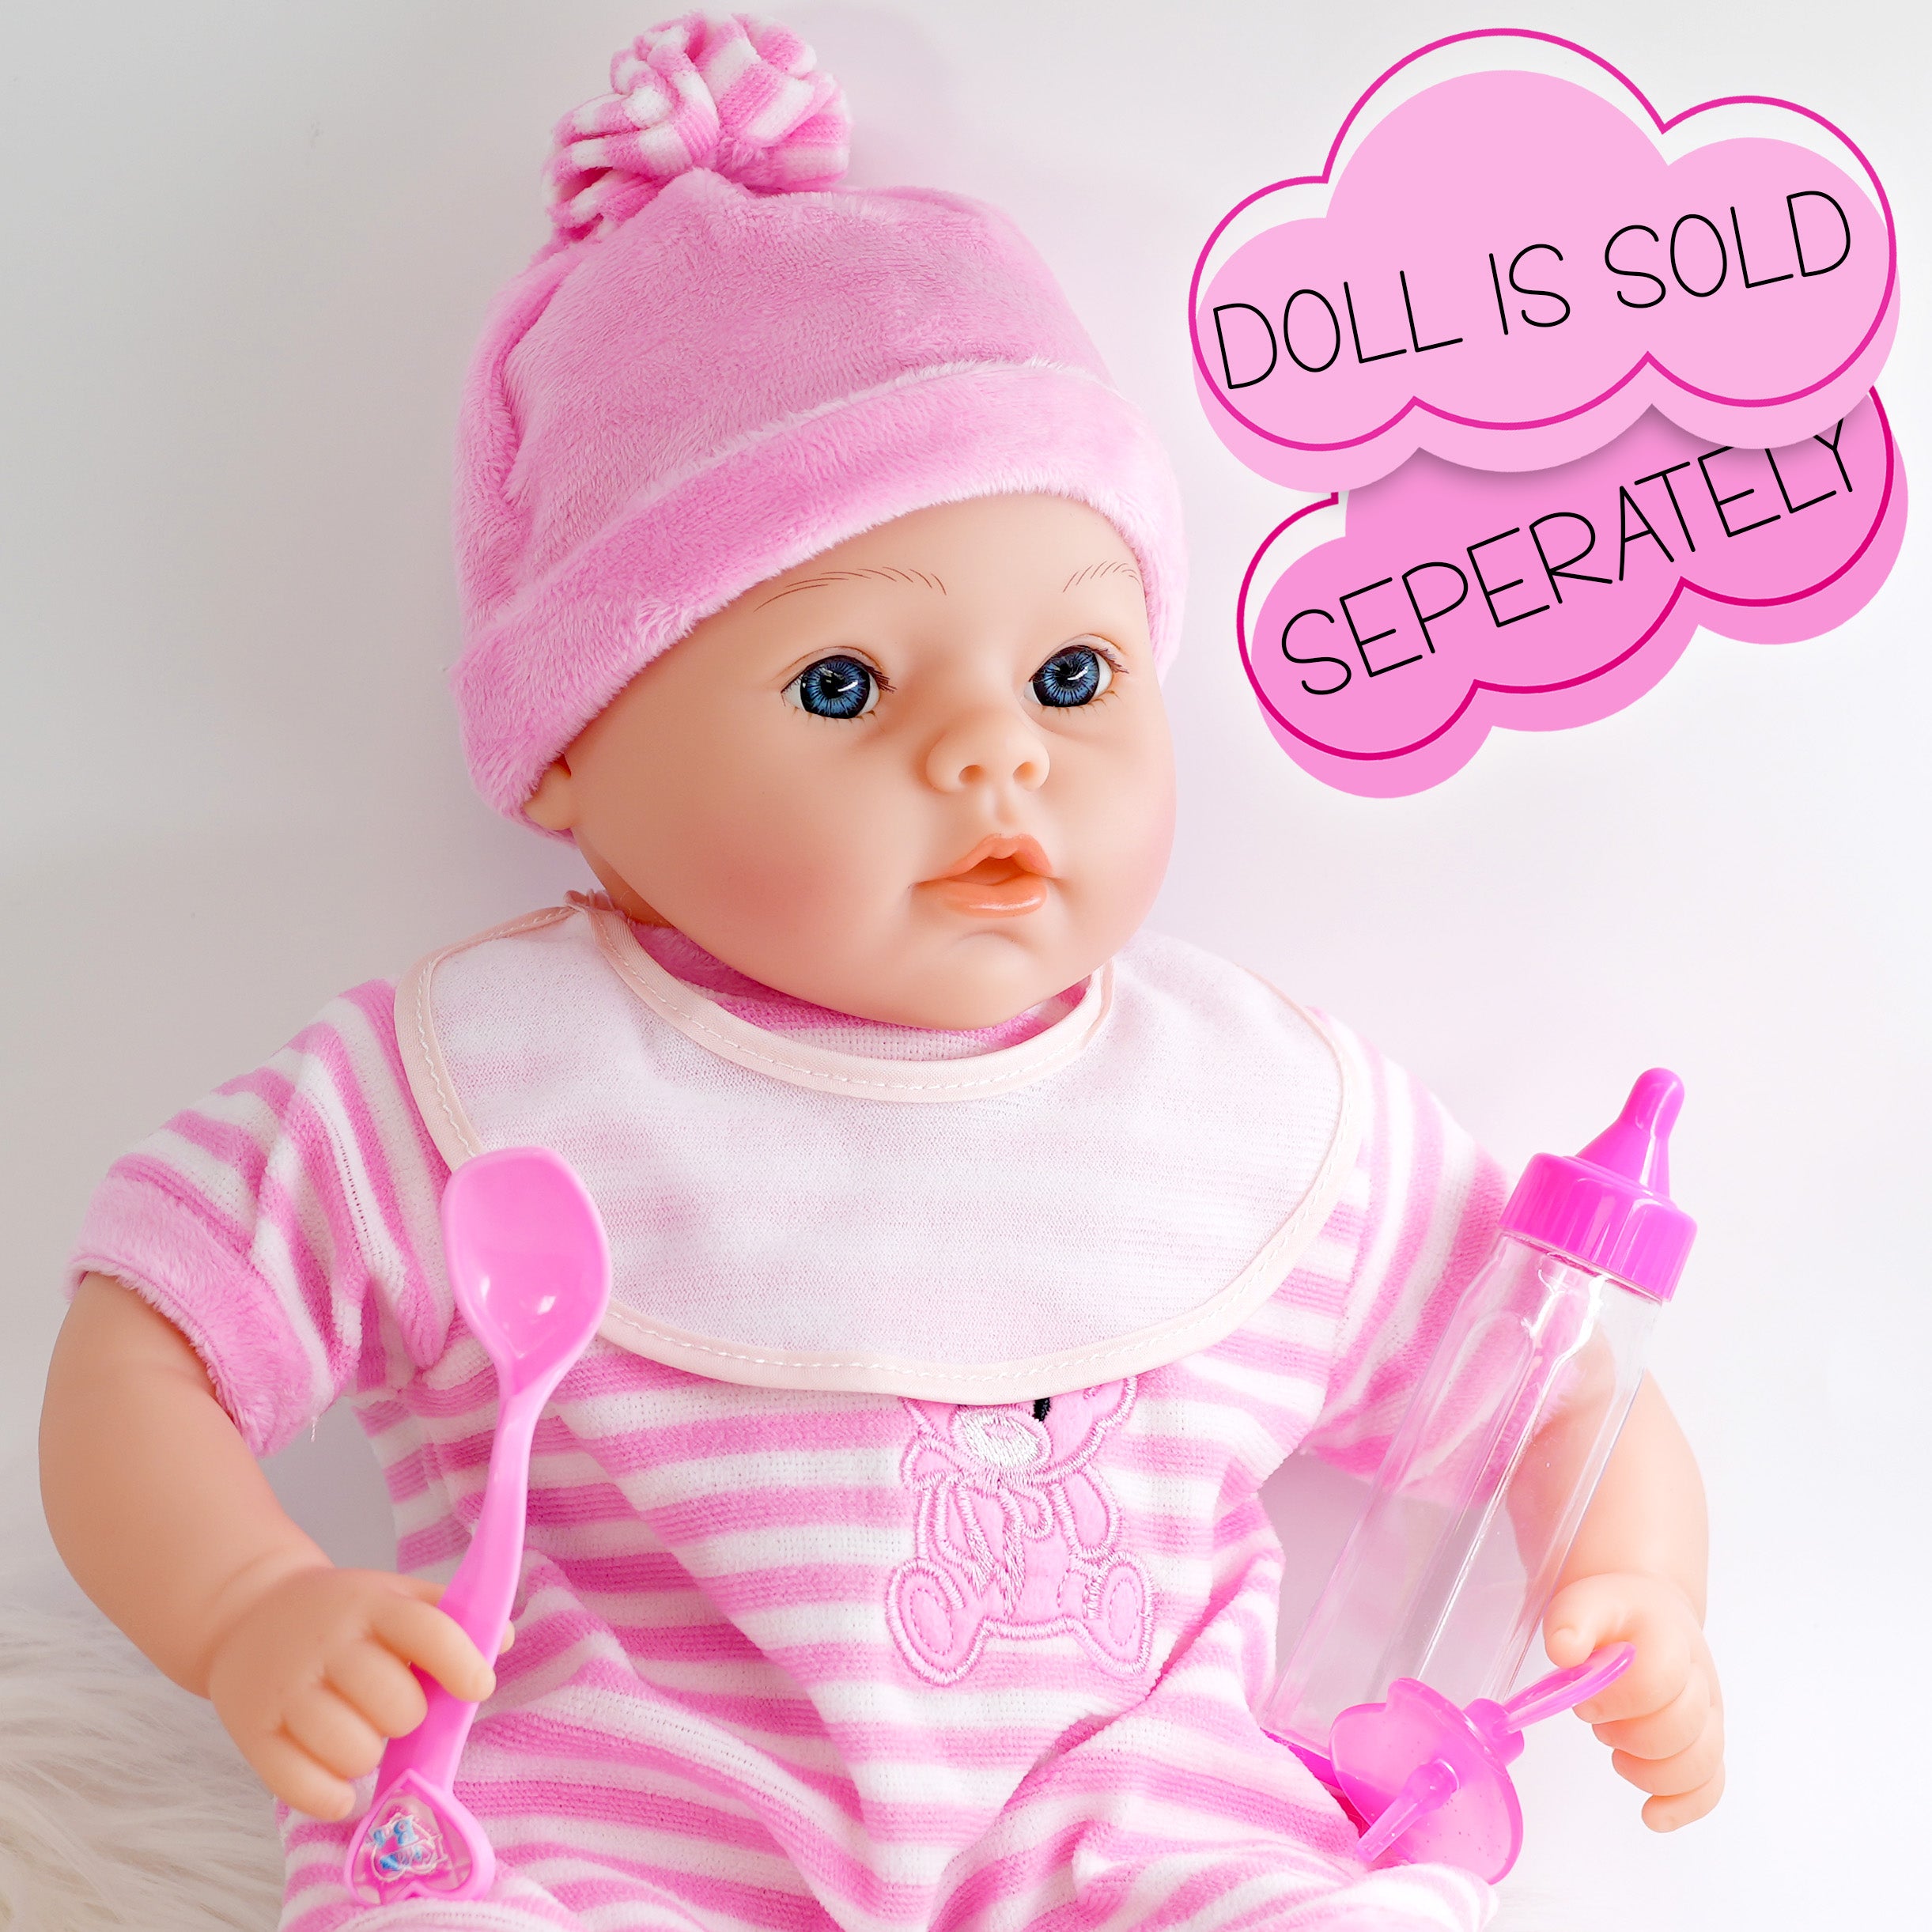 BiBi Doll Baby Doll Accessories 9 Piece Baby Dolls Accessories Set